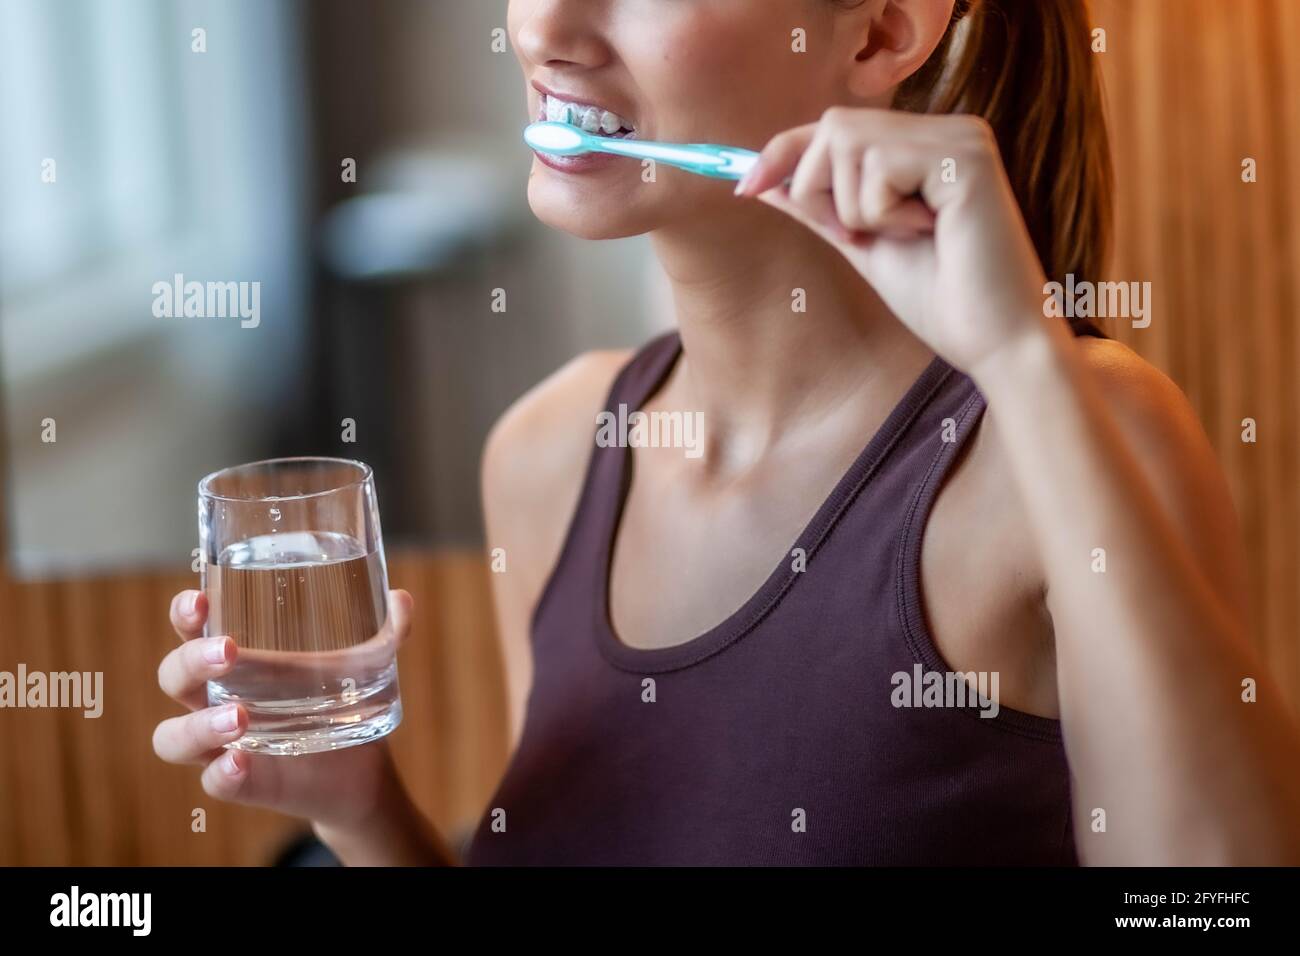 Frau, putzen ihre Zähne mit der Zahnbürste. Stockfoto